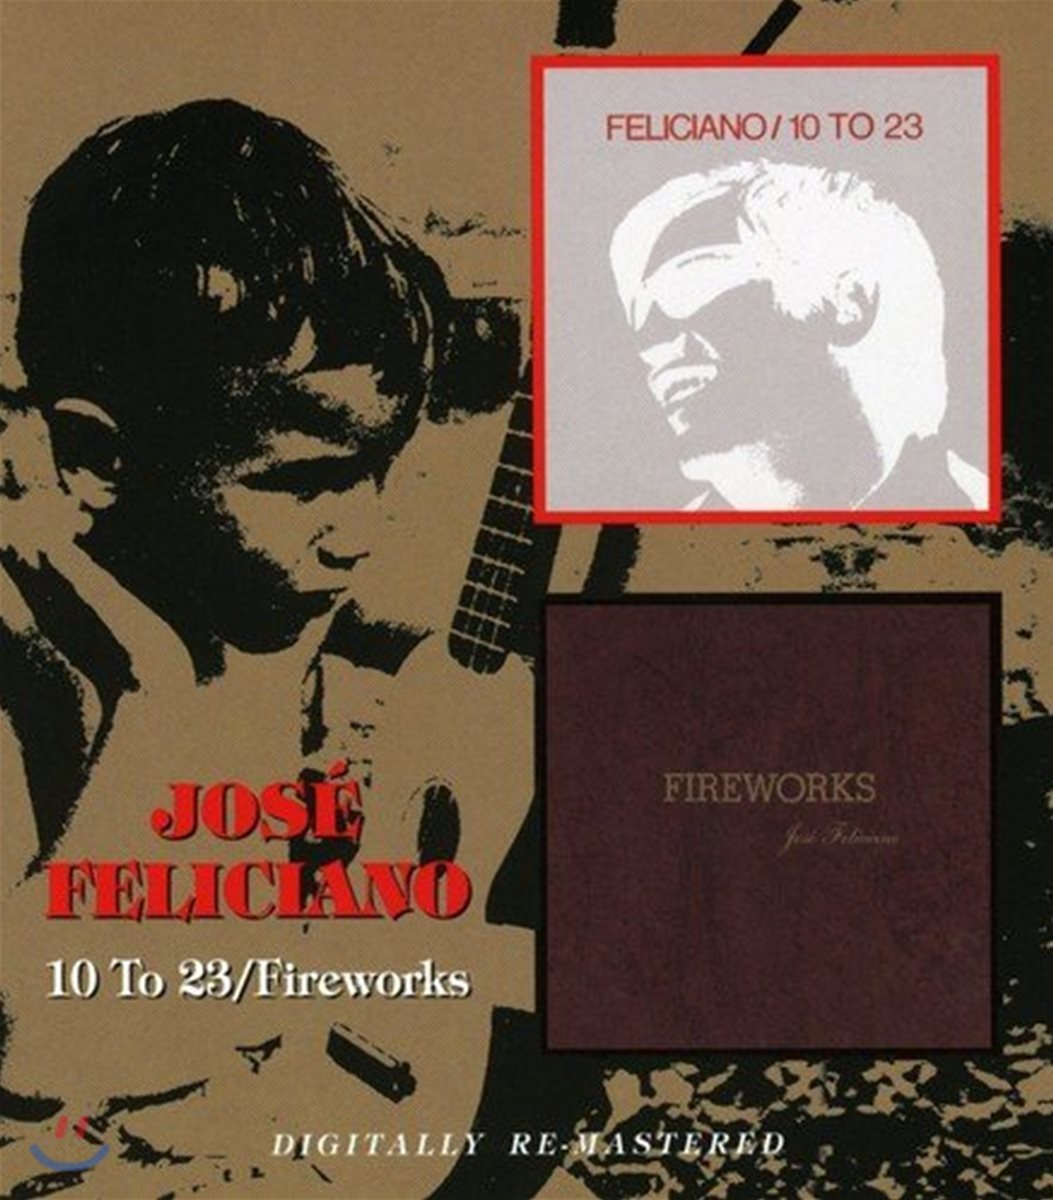 Jose Feliciano (호세 펠리치아노) - 10 To 23 / Fireworks